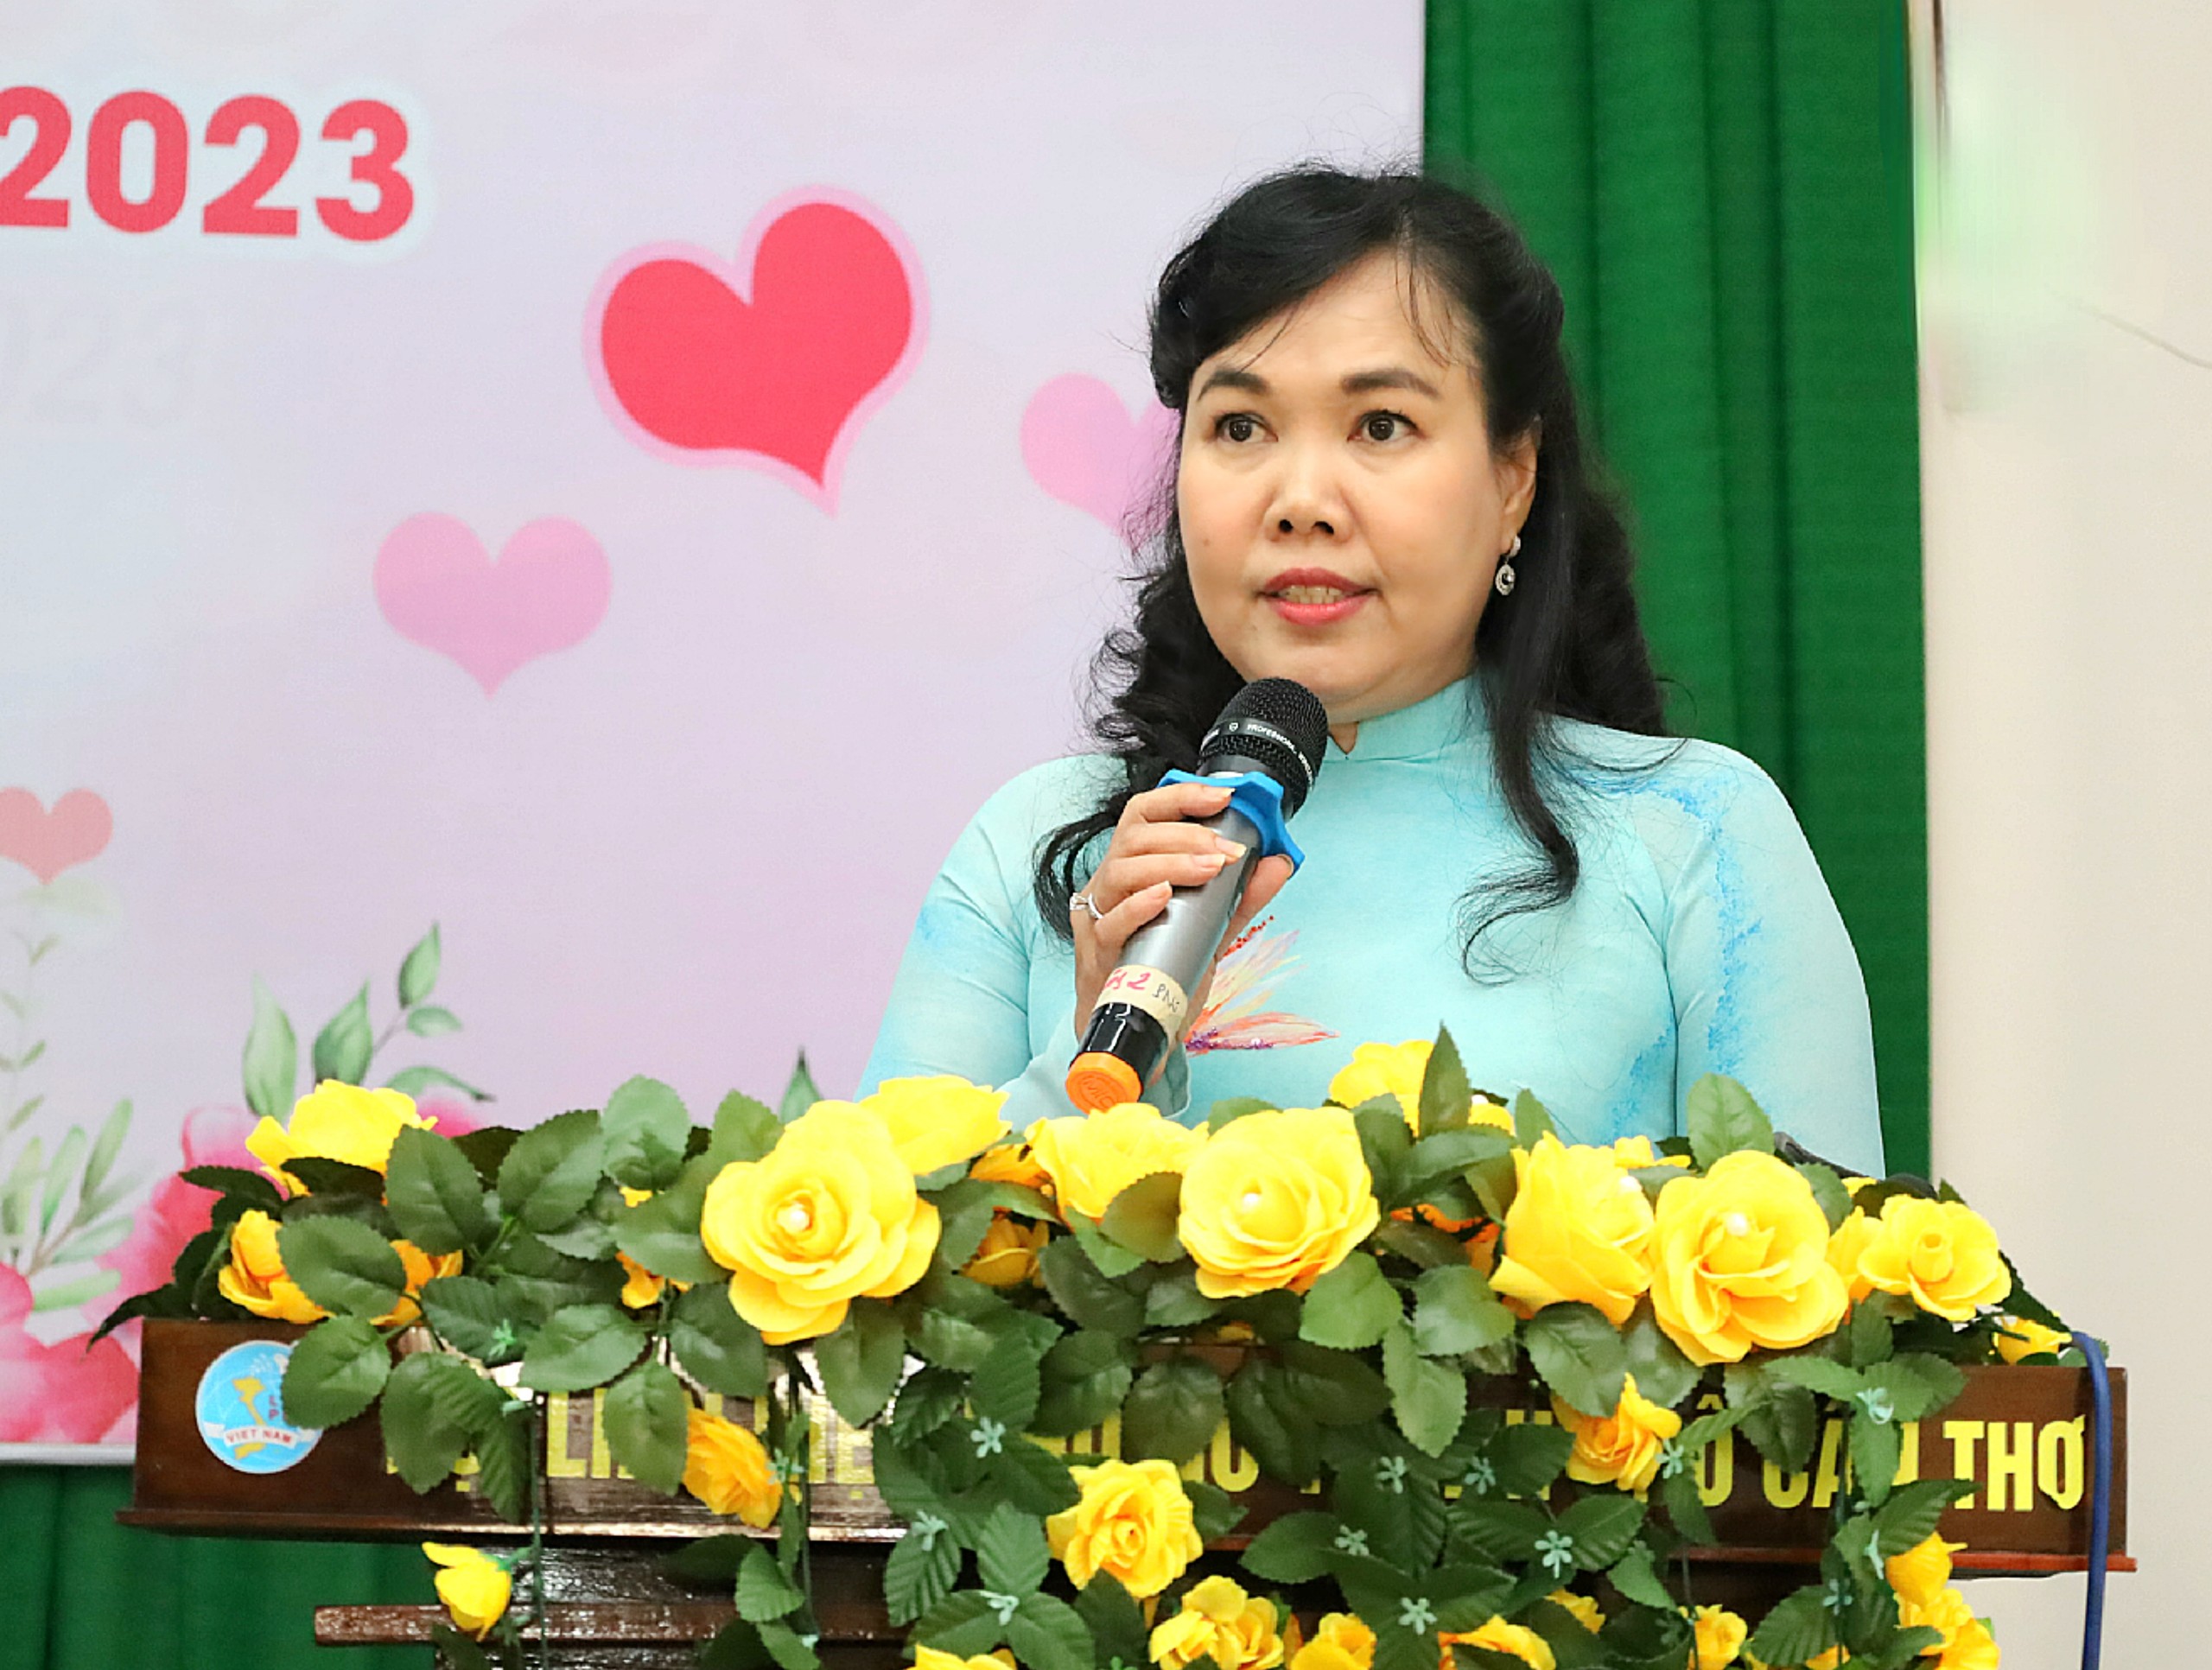 Bà Võ Kim Thoa - Chủ tịch Hội Liên hiệp phụ nữ TP. Cần Thơ phát biểu tại buổi họp mặt.